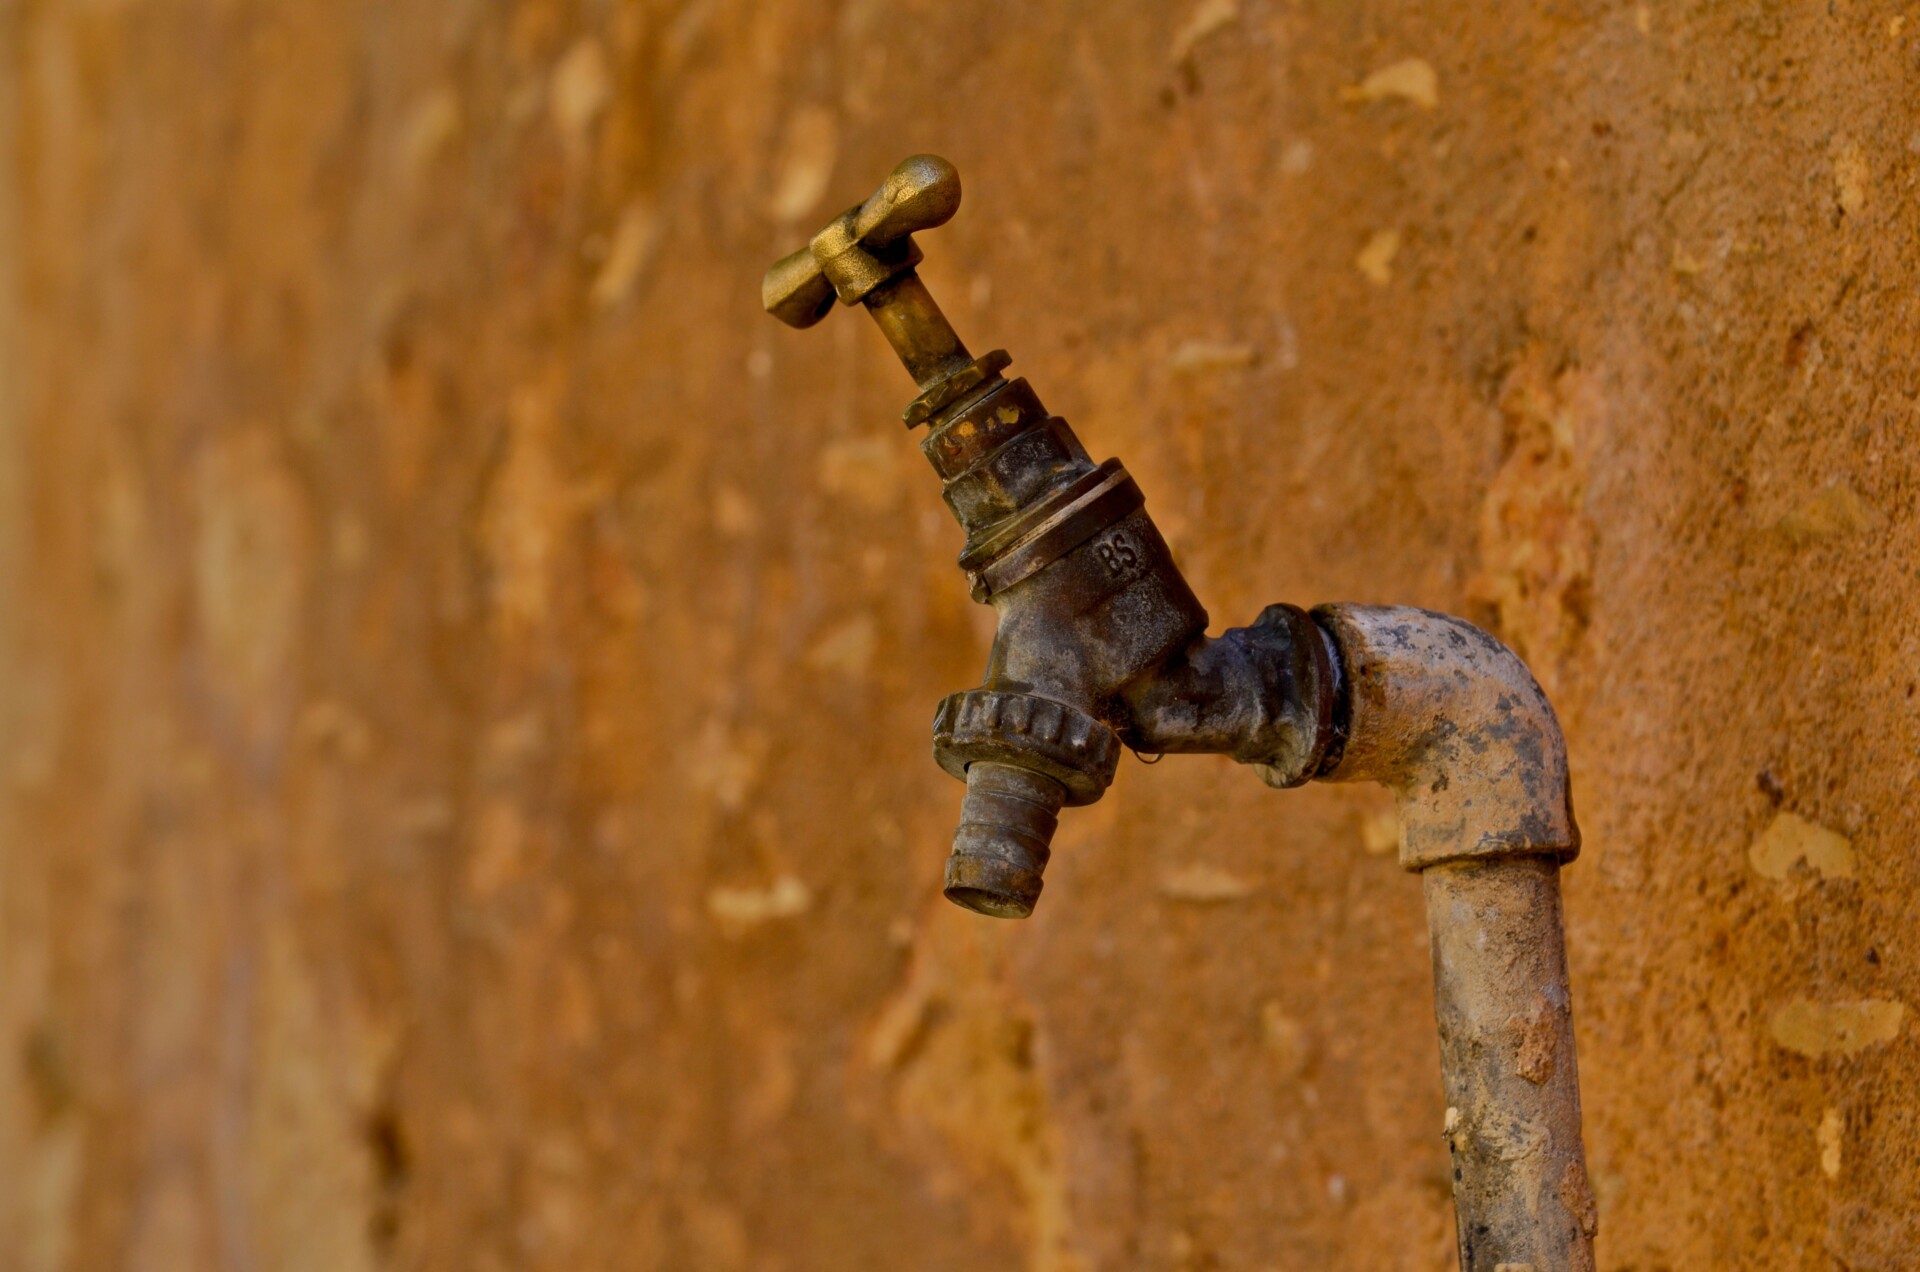 En rusten kran. Bildet er brukt i en artikkel som omhandler vannbehandling.